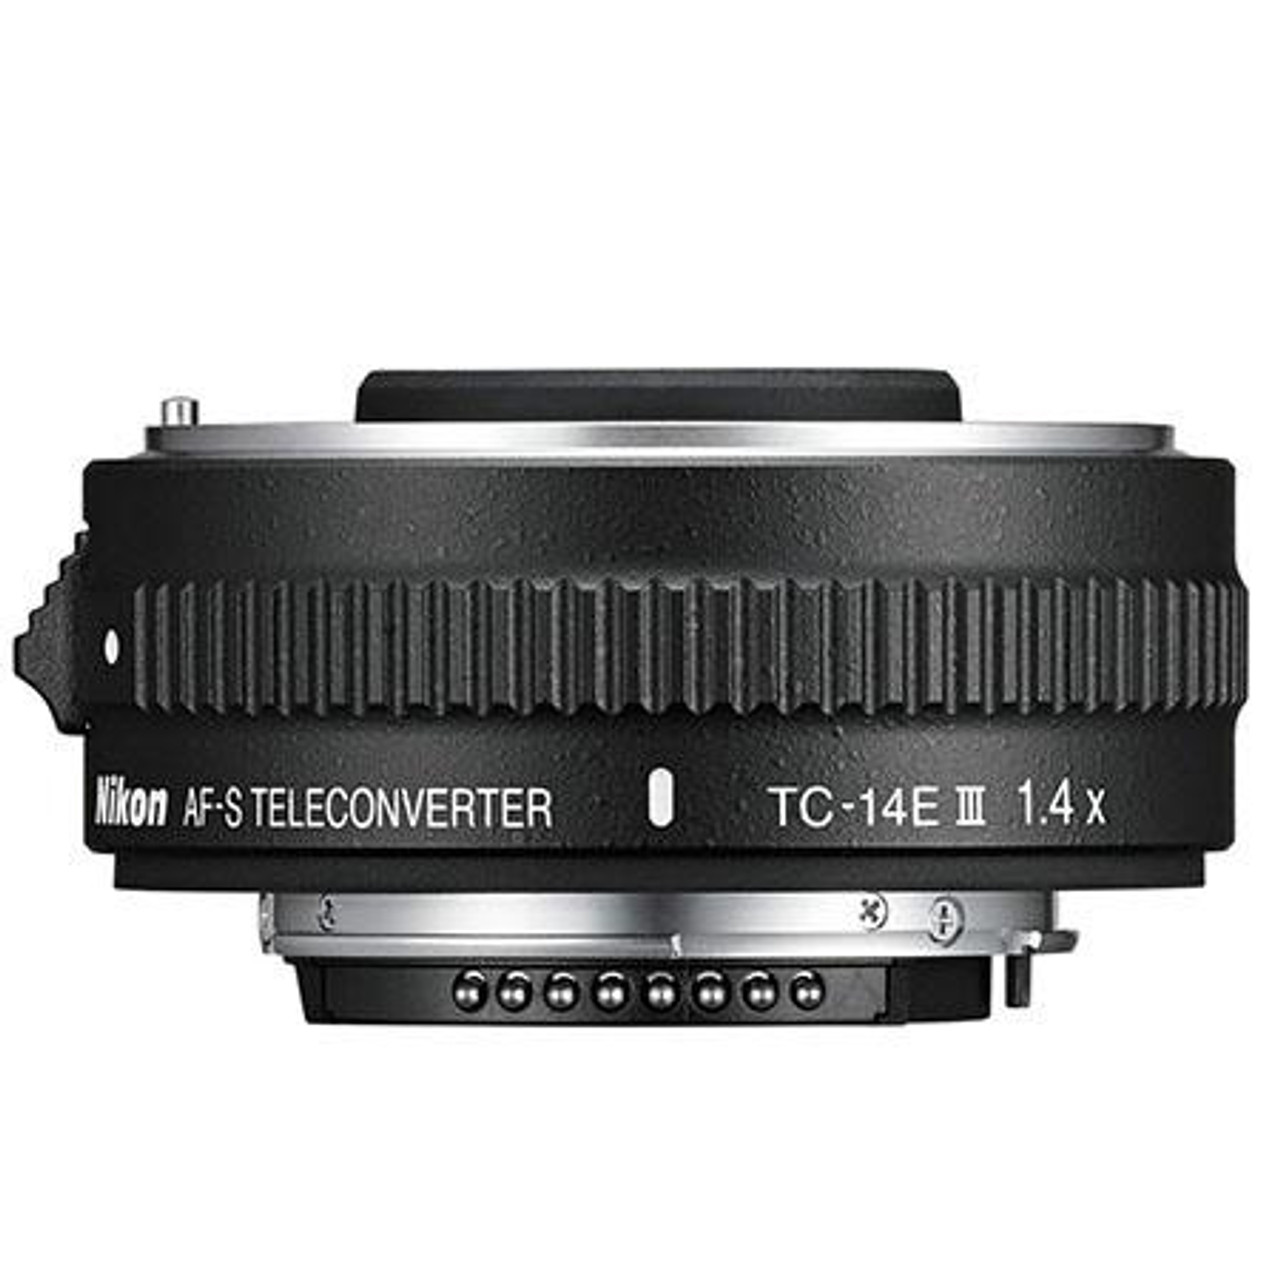 良品》 Nikon AF-S TELECONVERTER TC-14E III [ Lens 交換レンズ